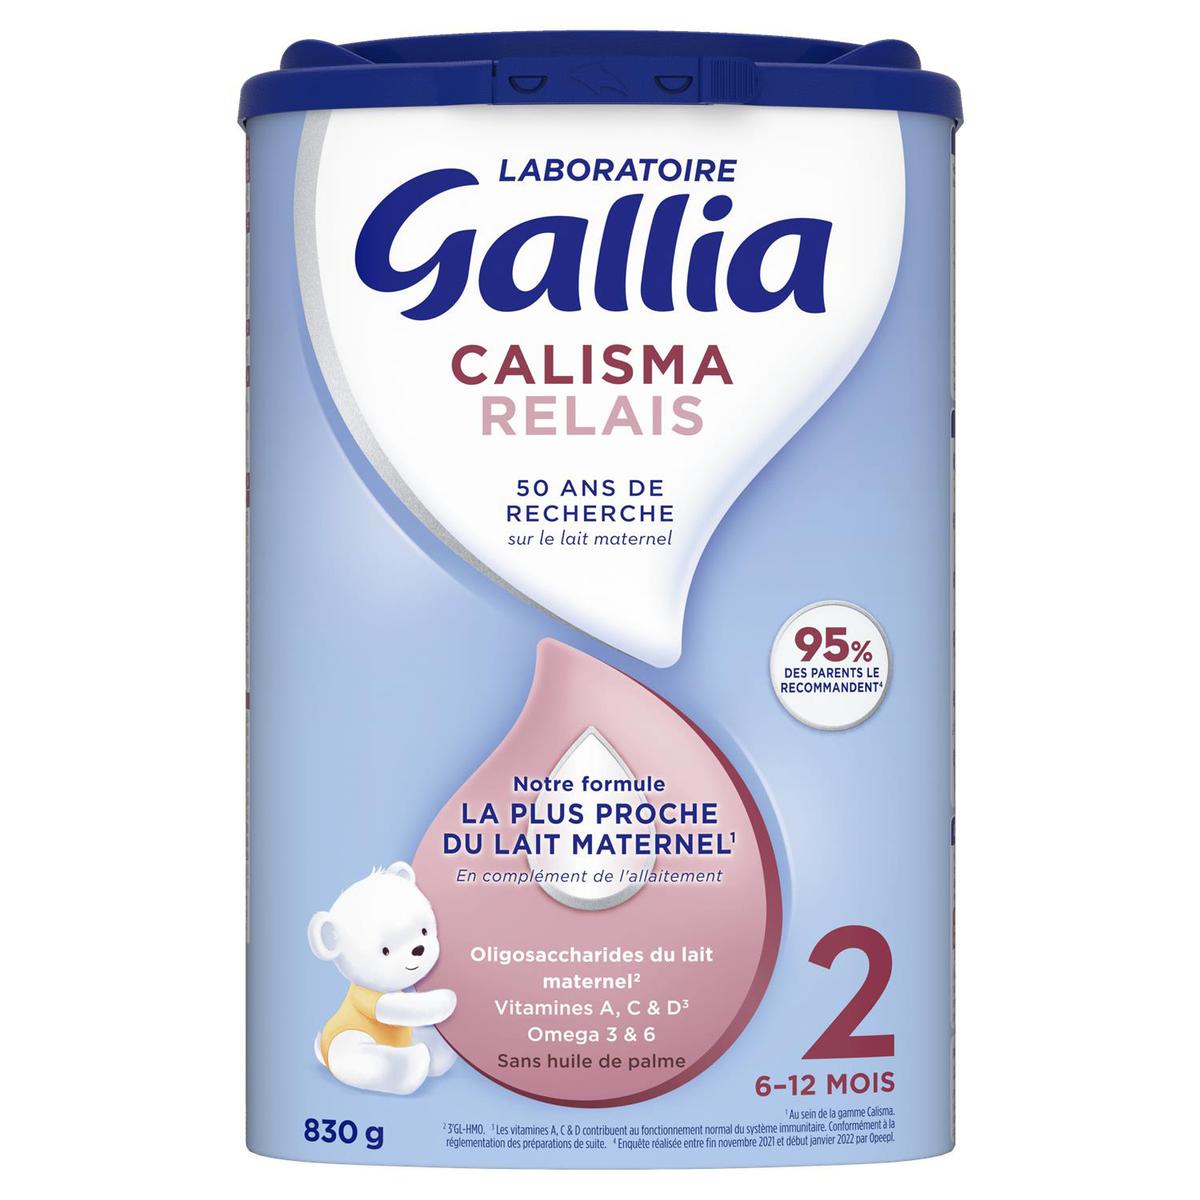 Gallia calisma relais 2 6-12 mois 830g